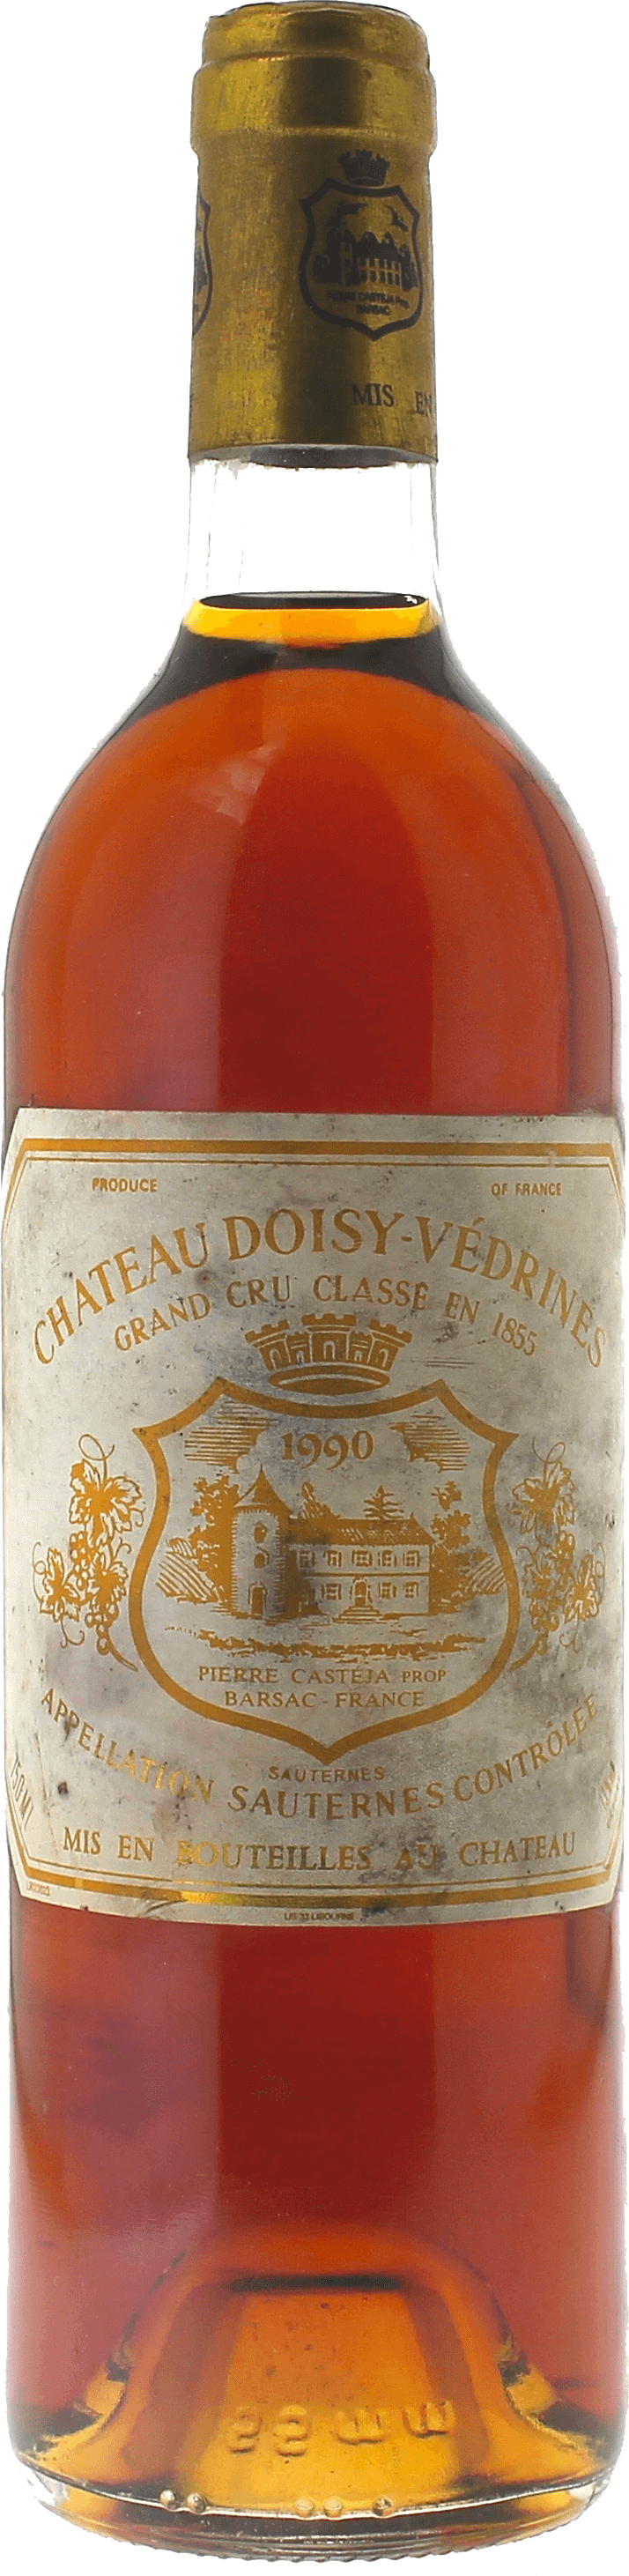 Doisy vedrines 1990  Sauternes, Bordeaux blanc